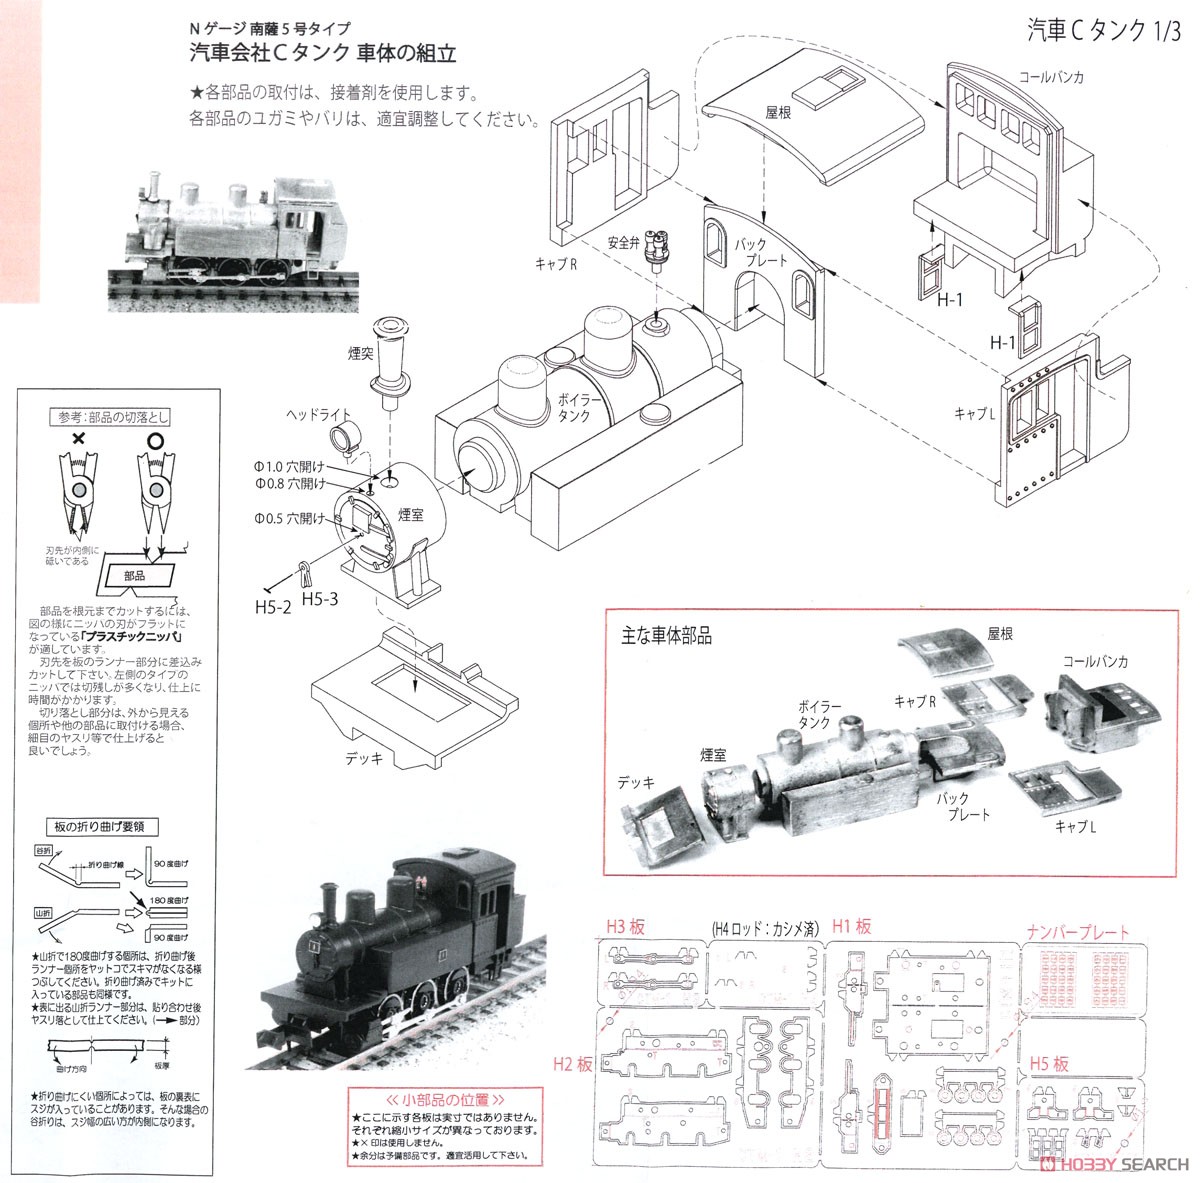 汽車会社 Cタンク 南薩5号タイプ (ホワイトメタル車体) 組立キット (組み立てキット) (鉄道模型) 設計図1